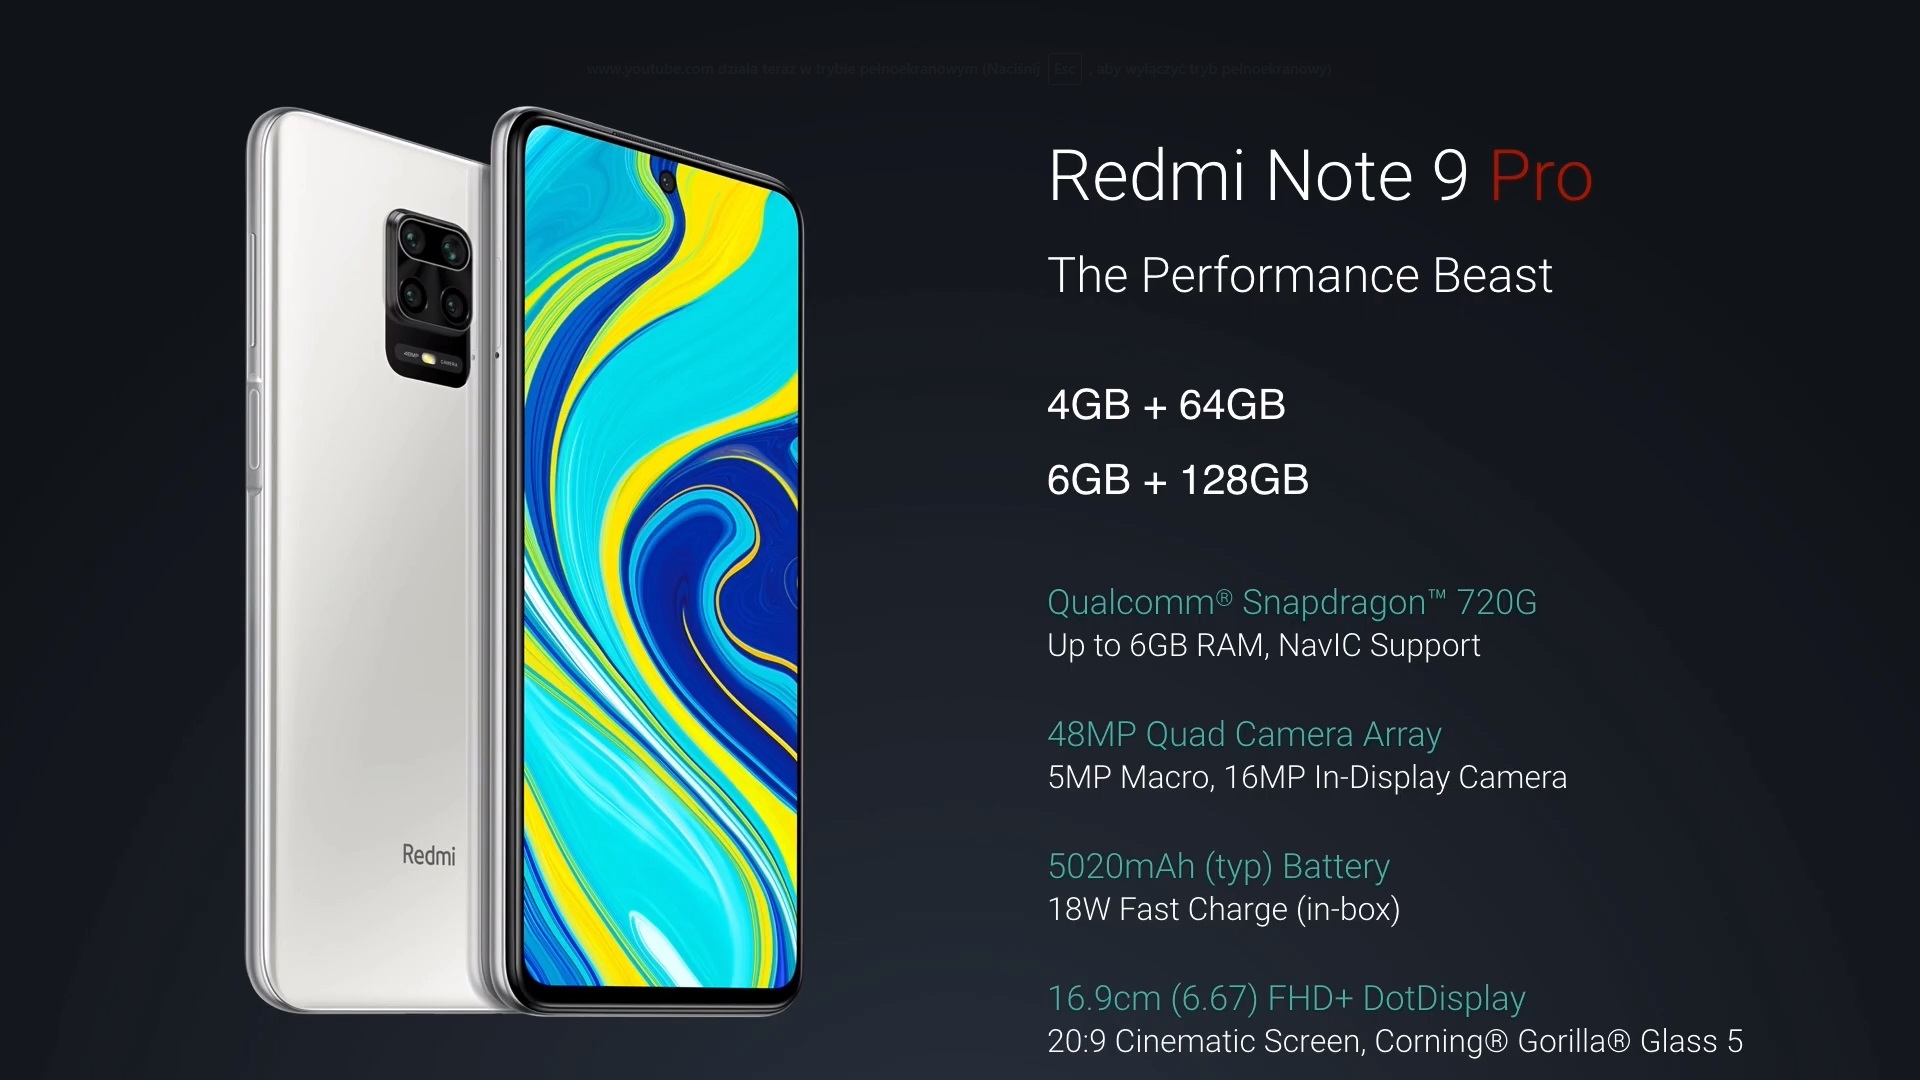 Redmi Note 9 Pro smartphone